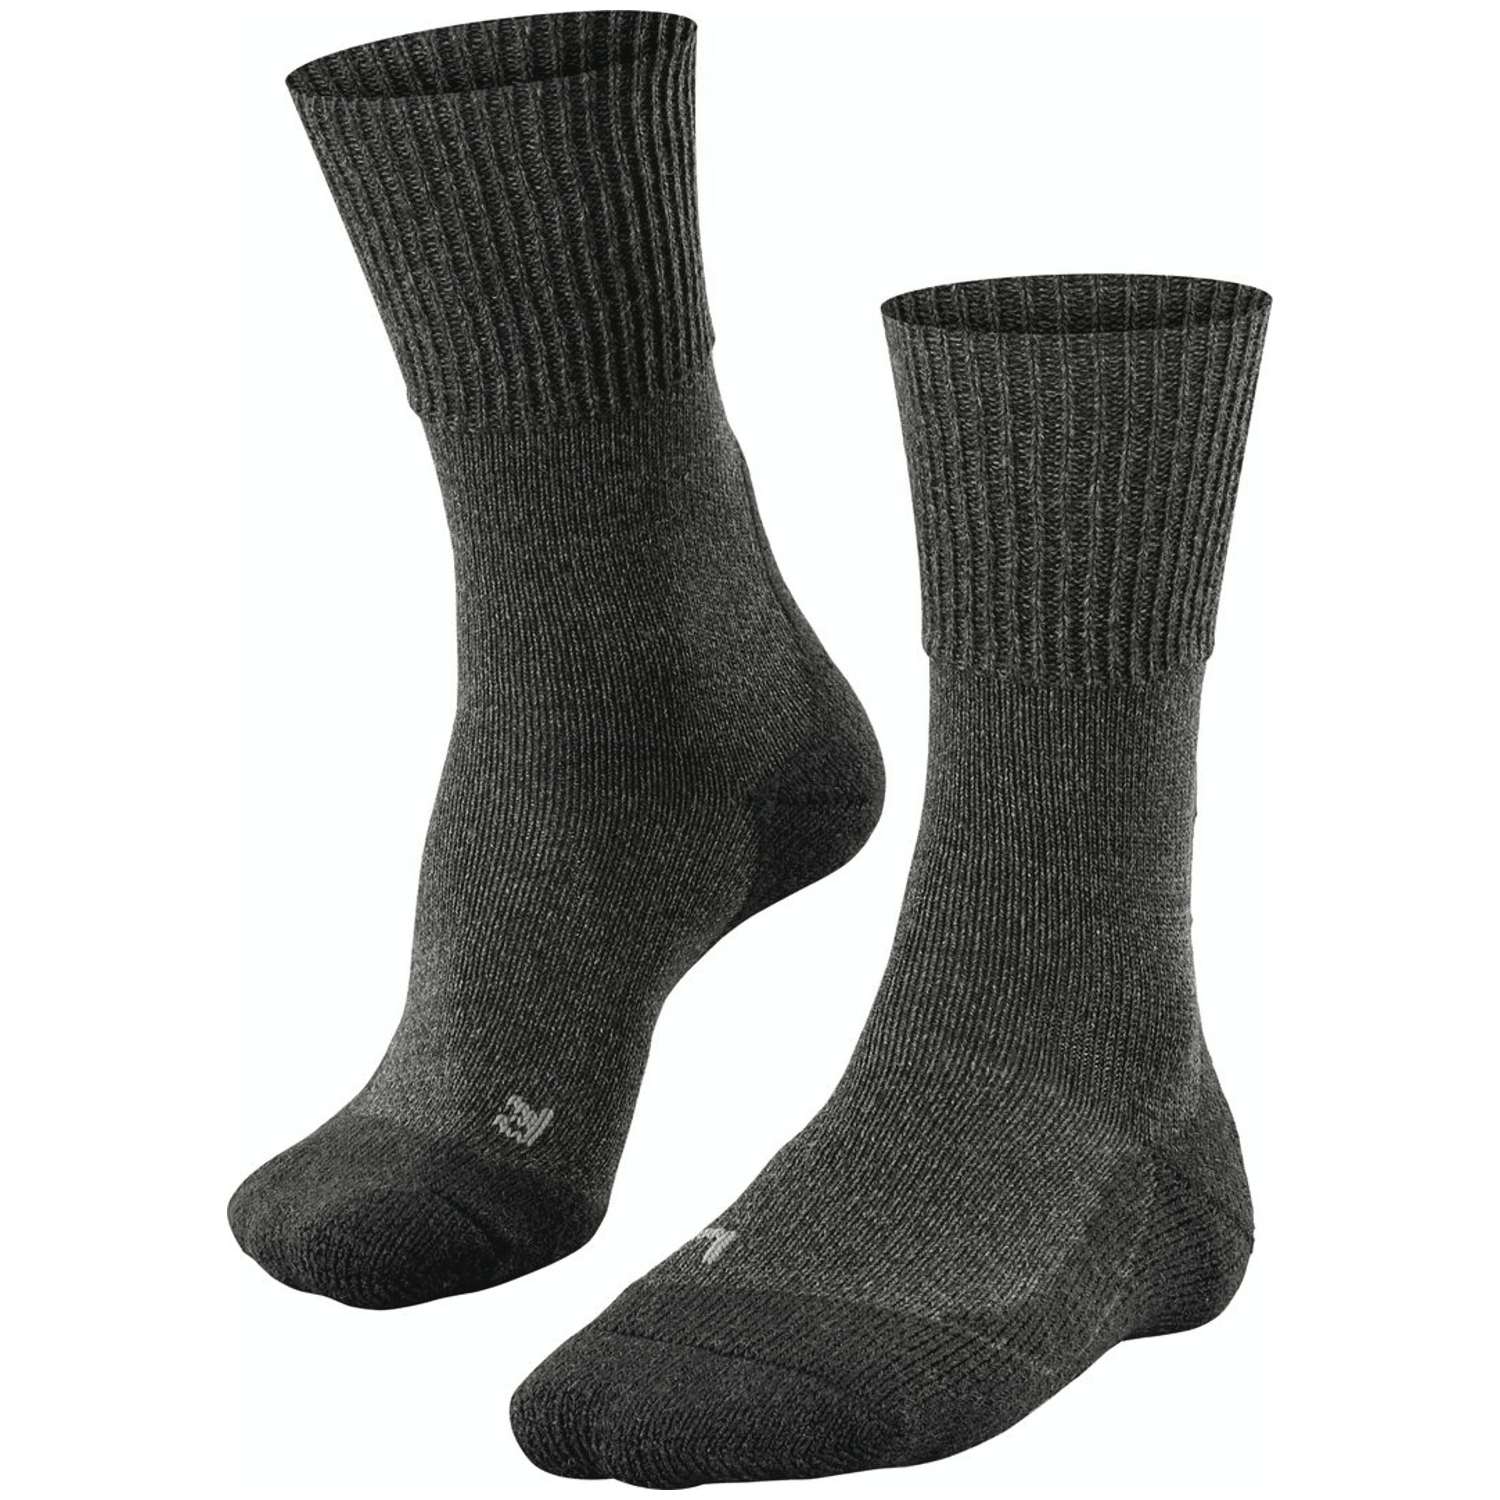 Falke Trekking 1 Adventure Wool Herren Socken